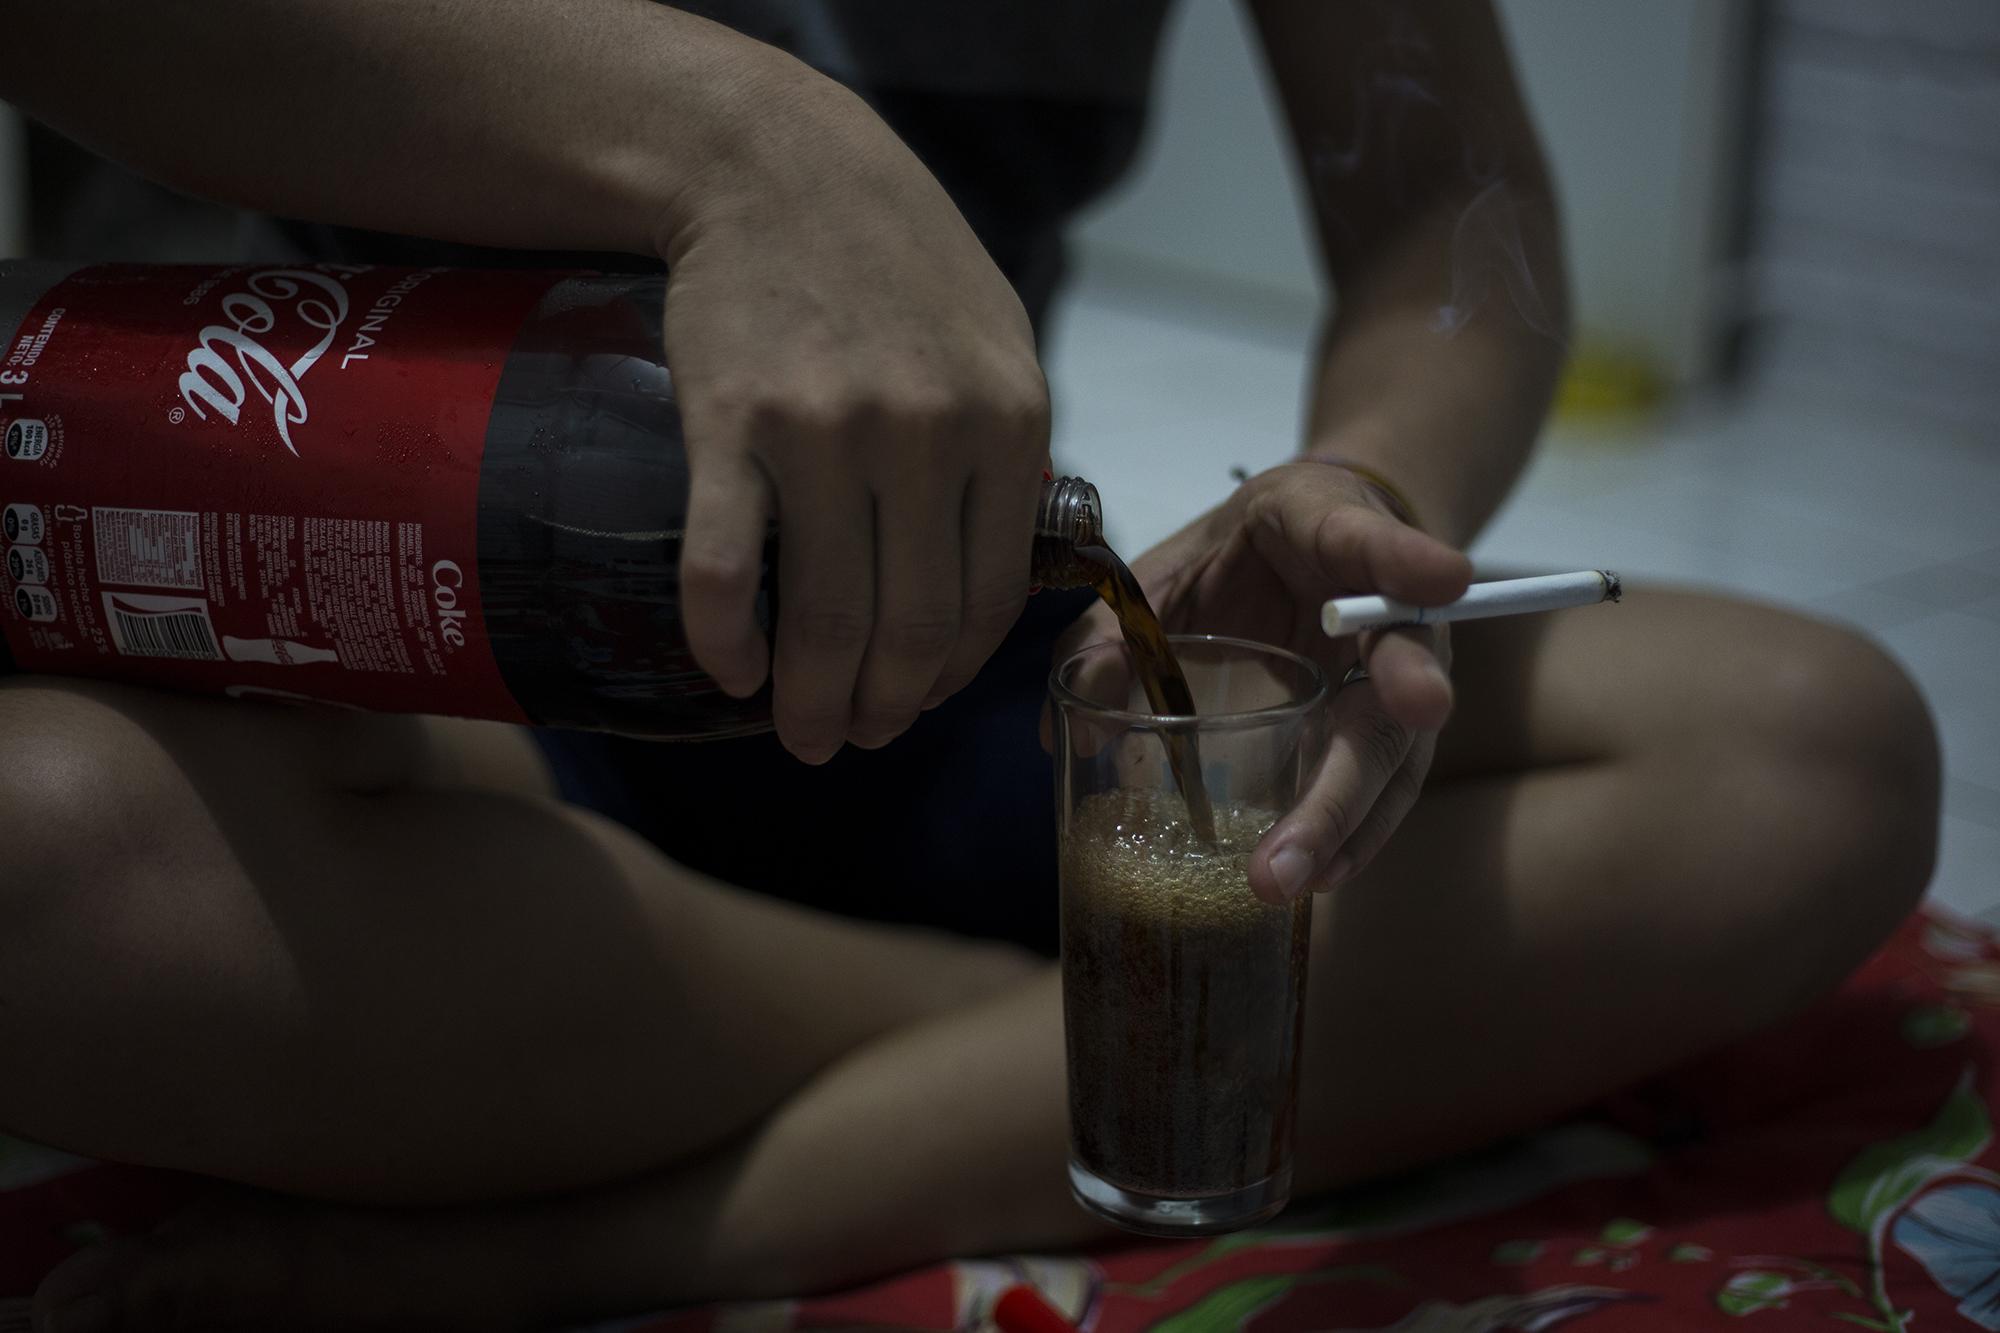 Doctor Veneno, uno de los refugiados en la casa de seguridad, conversa con un cigarrillo entre los dedos y se sirve Coca Cola, pasar el tiempo. El encierro ha acostumbrado a los estudiantes a largas jornadas de conversación nocturna. Foto: Víctor Peña.